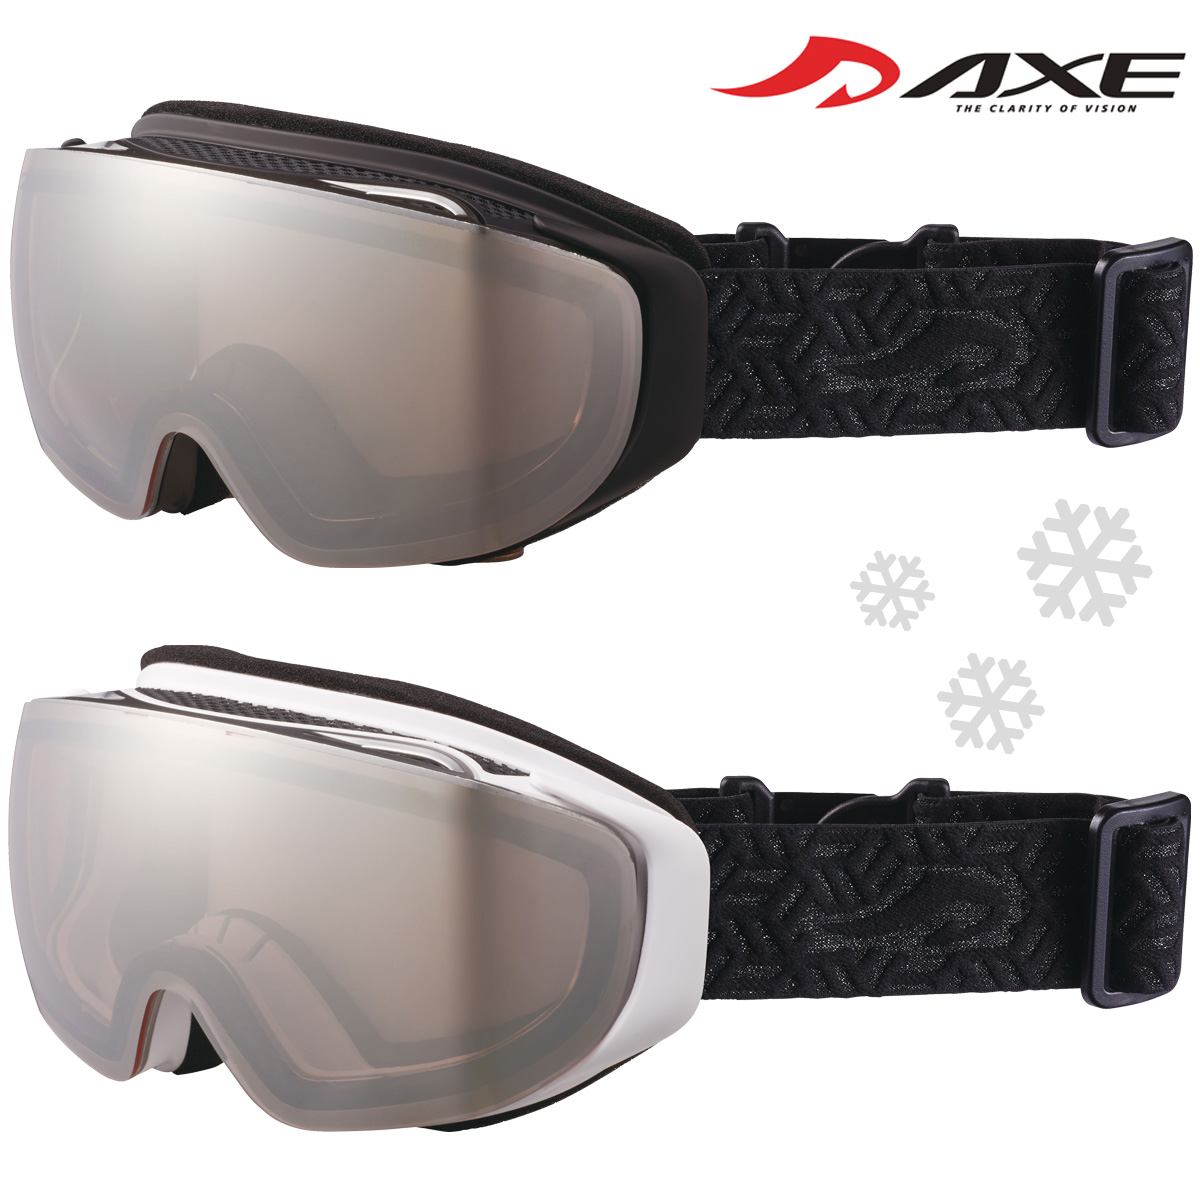 ゴーグル 眼鏡対応 ミラー スキー スノーボード AX899-WMD スノーゴーグル メガネ ダブルレンズ 曇り止め機能付き AXE アックス